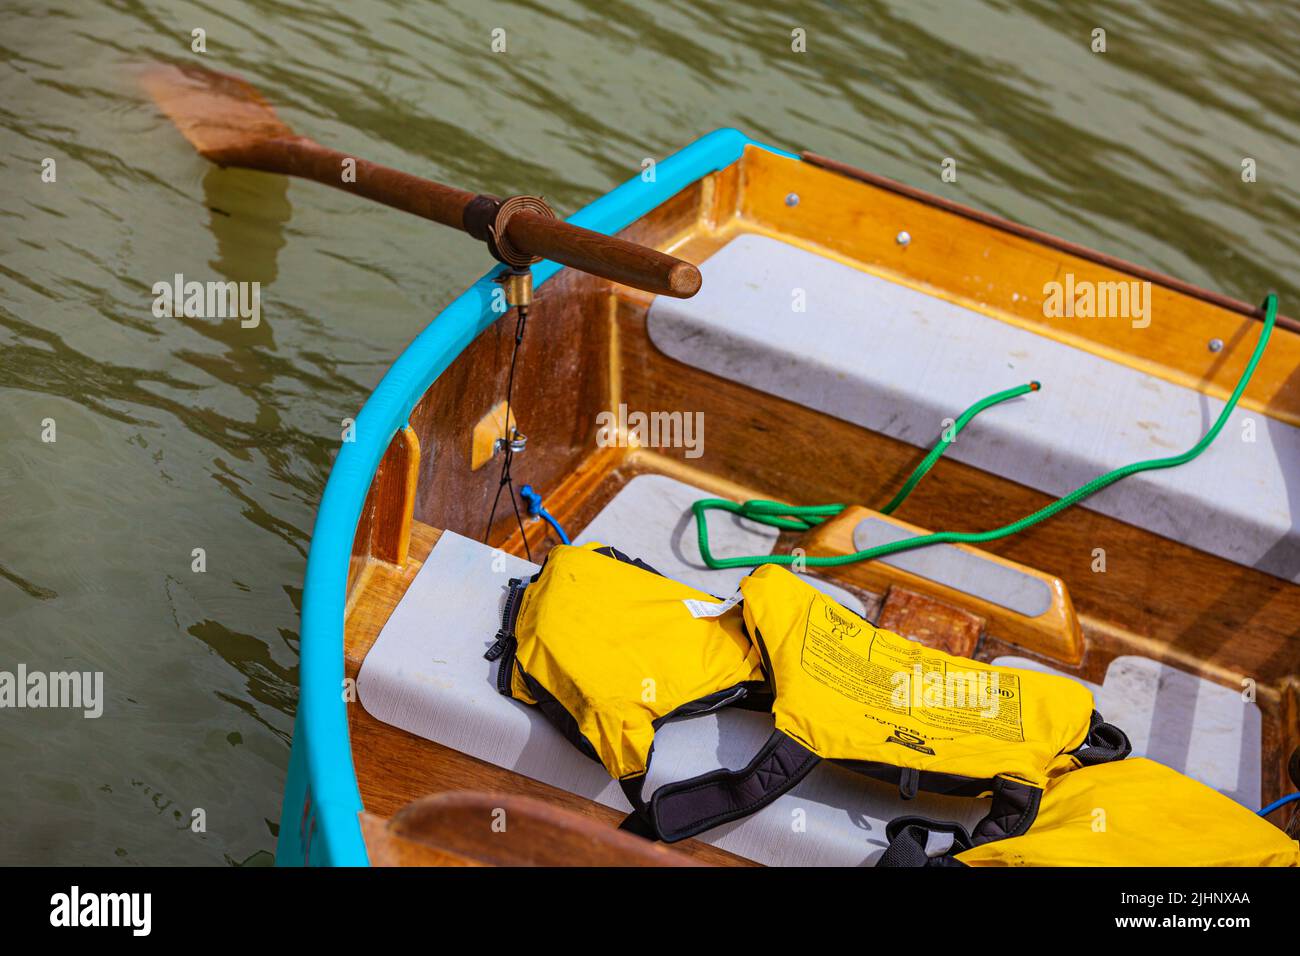 Un petit bateau à rames attaché à une corde Photo Stock - Alamy